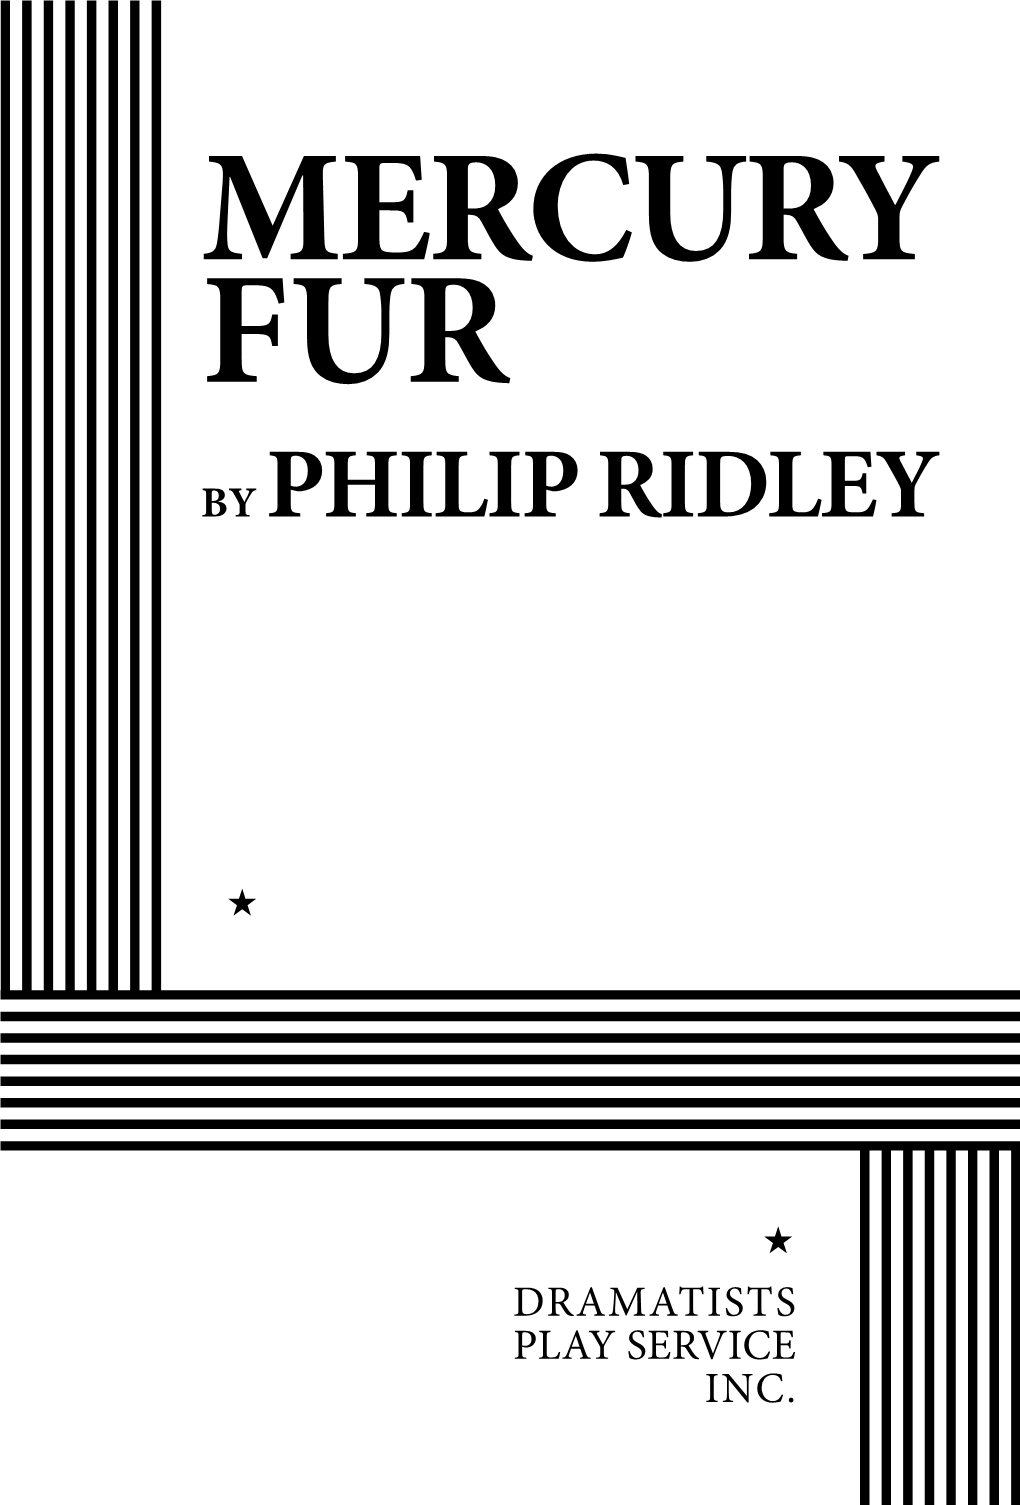 Mercury Fur by Philip Ridley